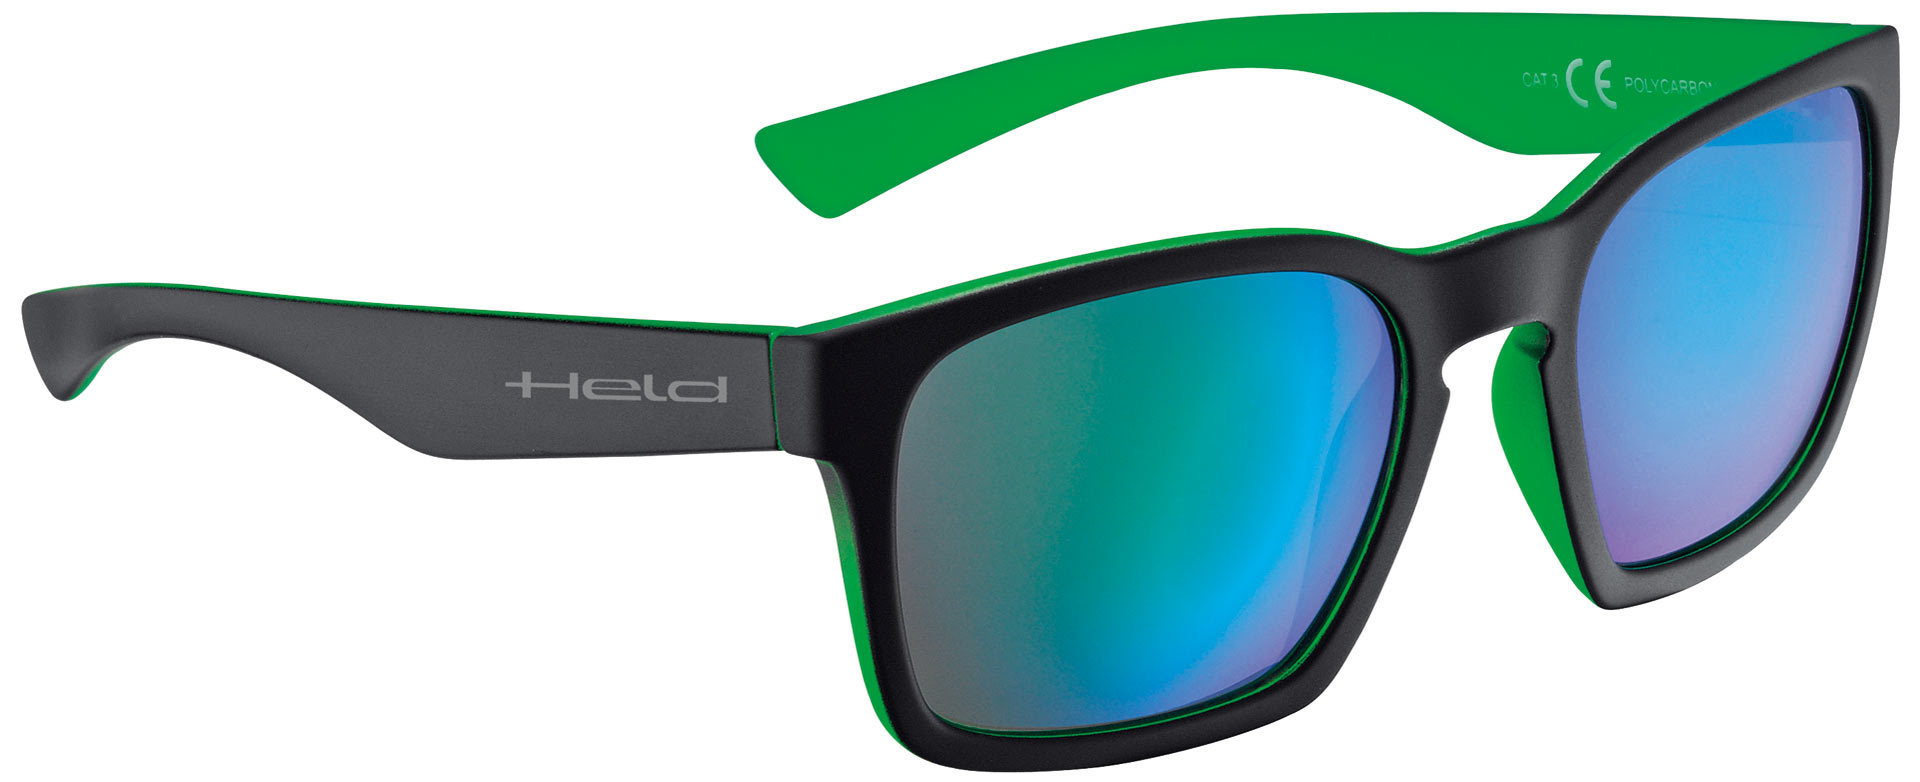 солнцезащитные очки 71 зеленый Очки Held 9740 солнцезащитные, черный/зеленый